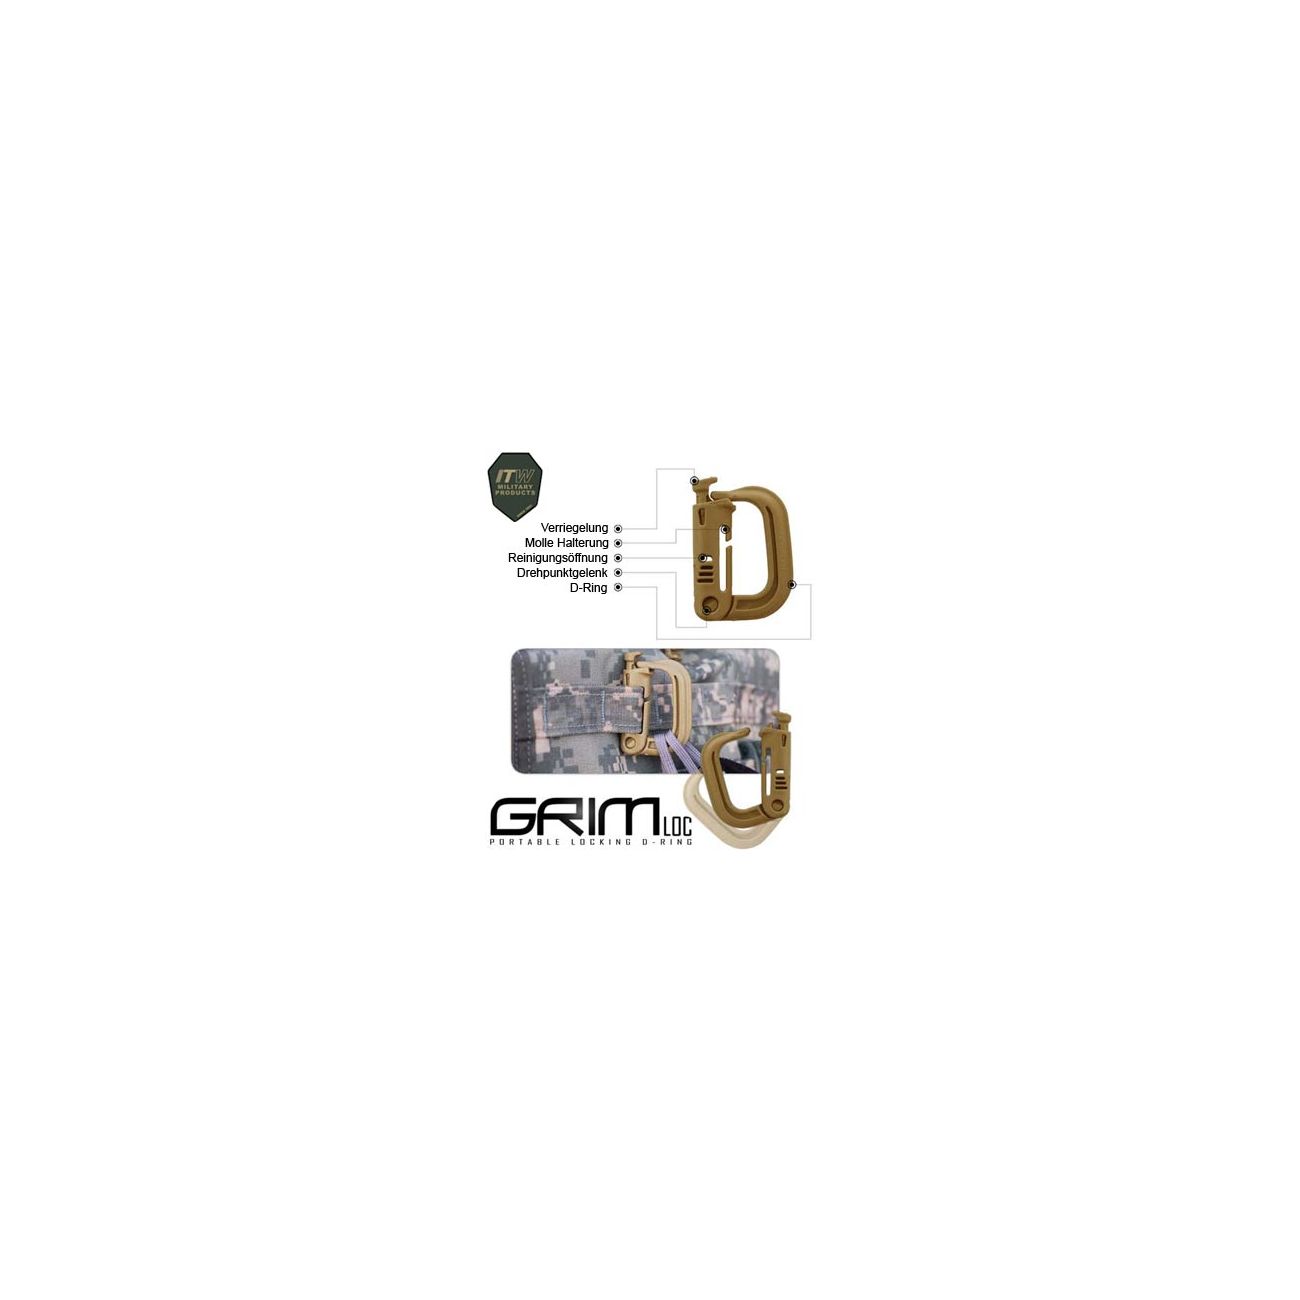 ITW Nexus Grimloc (Karabiner) foliage grn Bild 1